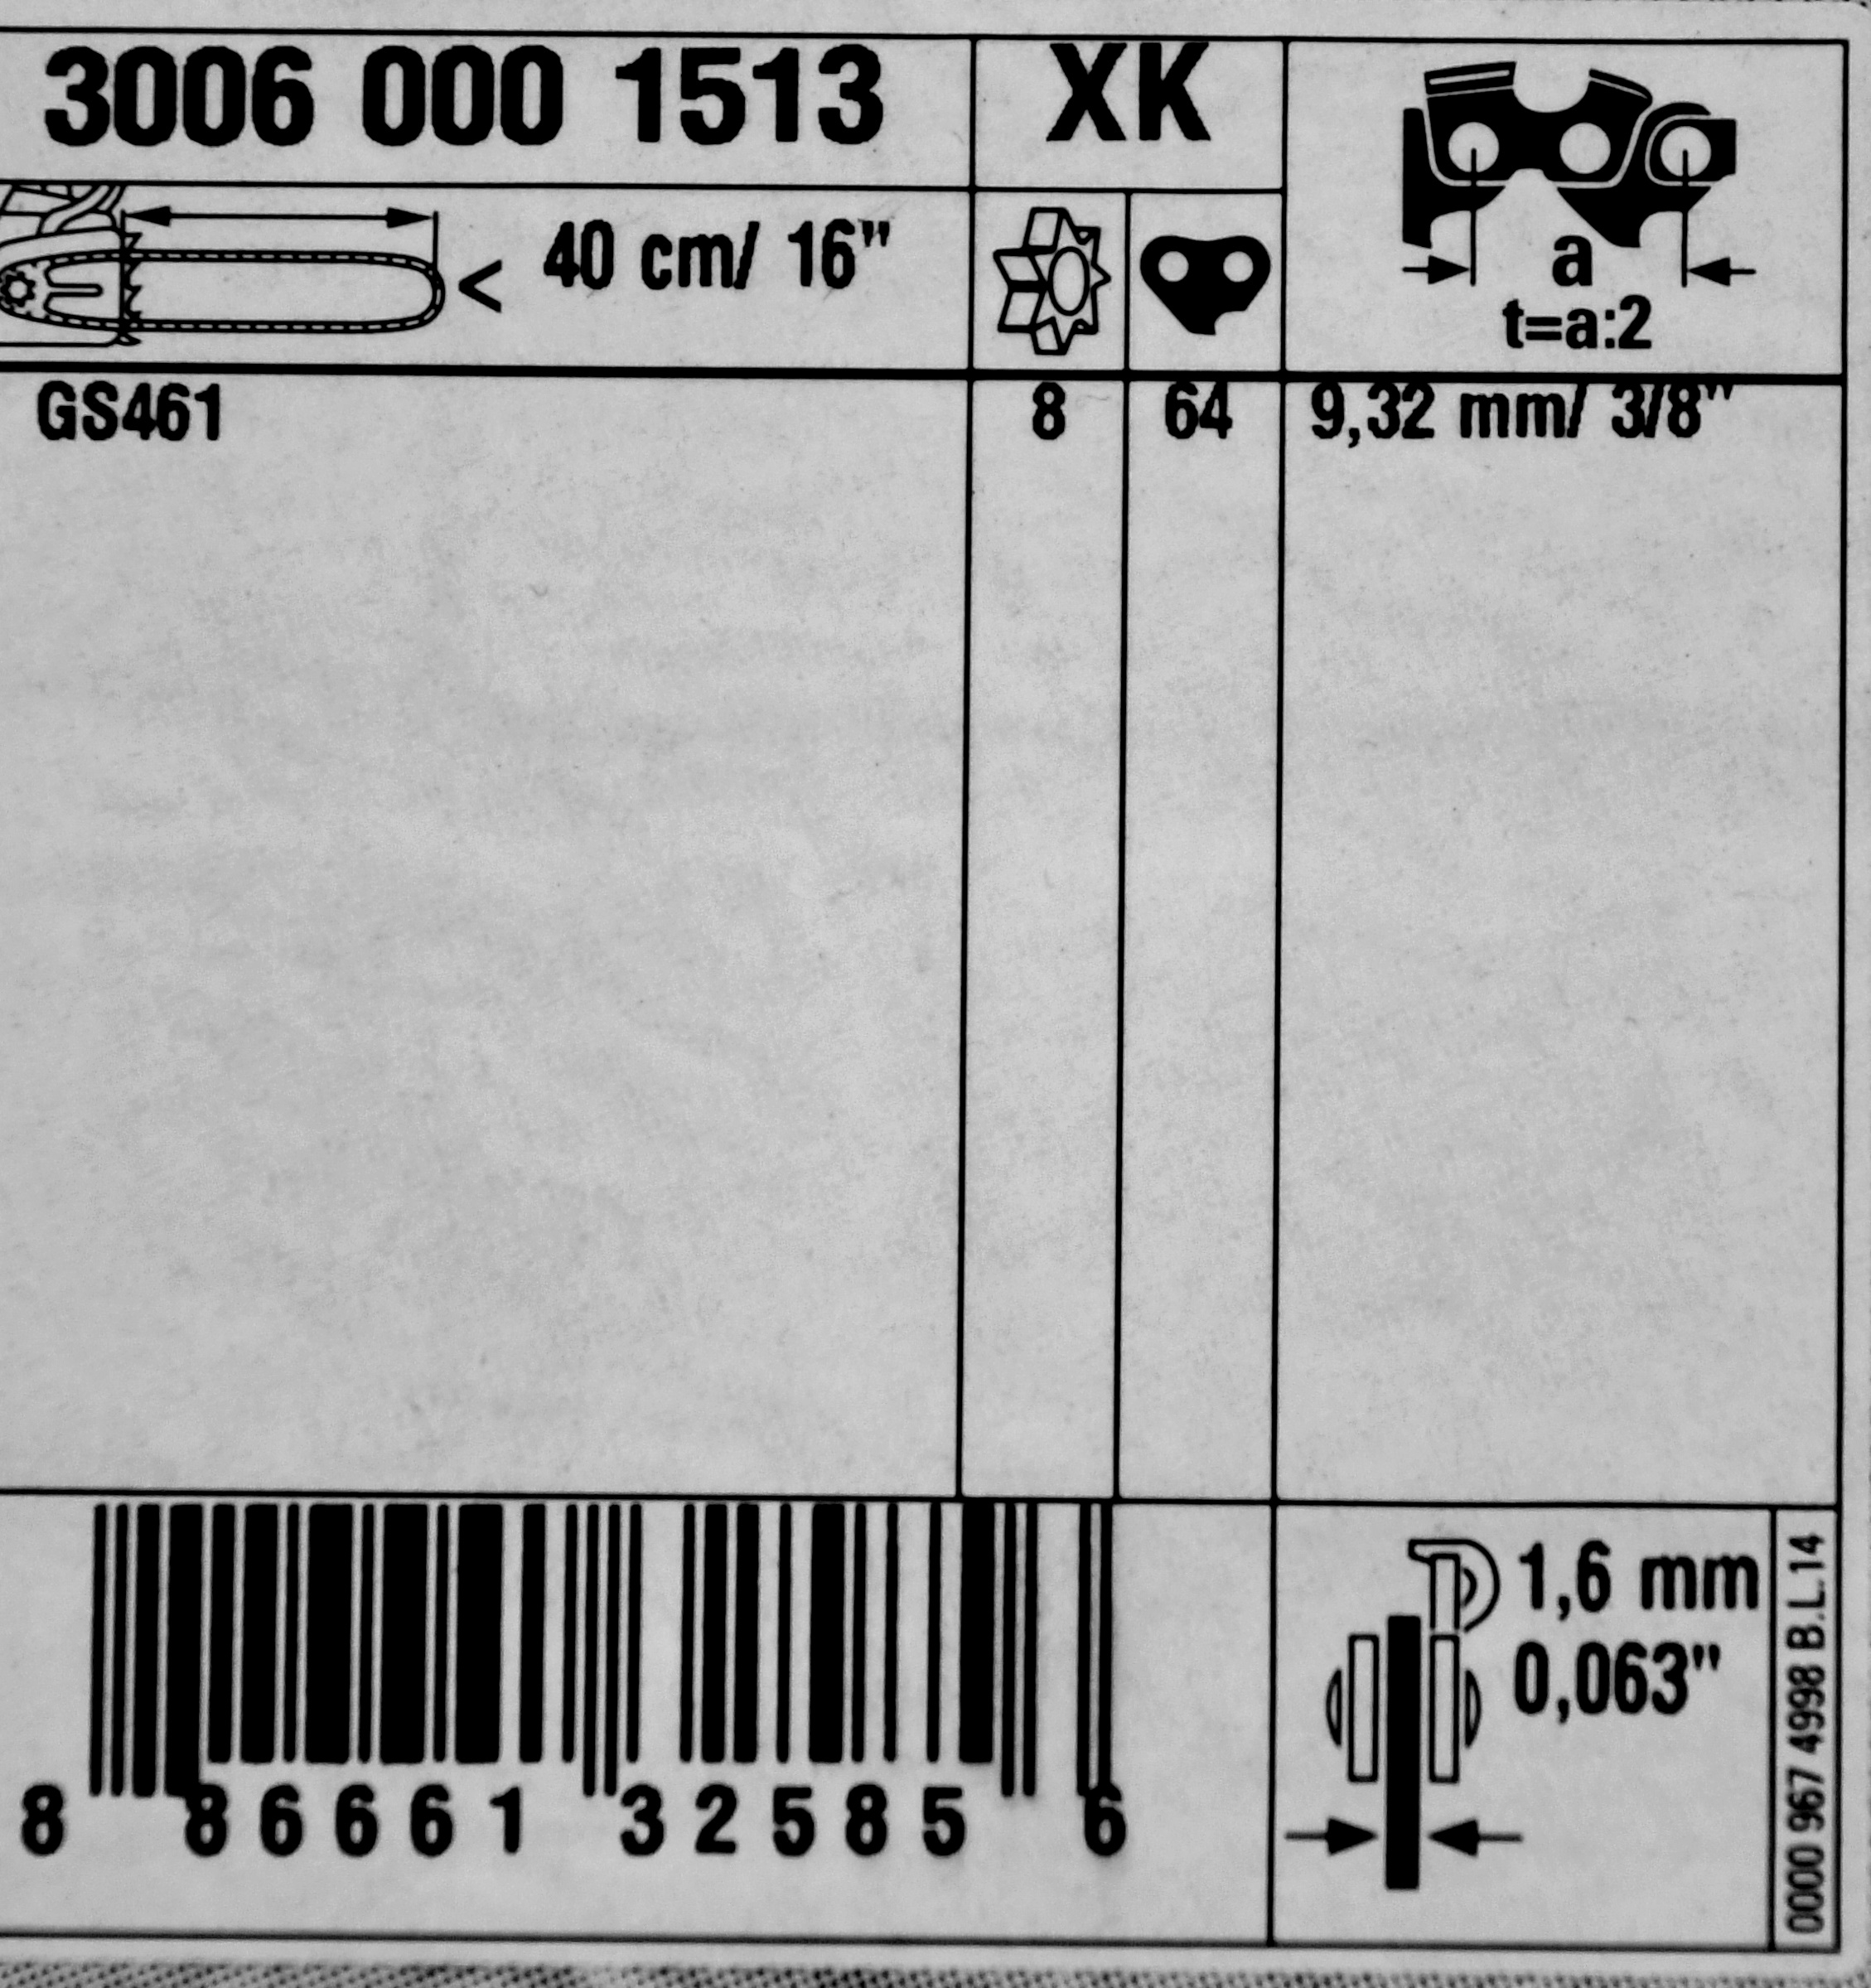 STIHL 30060001513 Führungsschiene Rollomatic Strong G - 3/8" 1,6 40cm, für GS 461